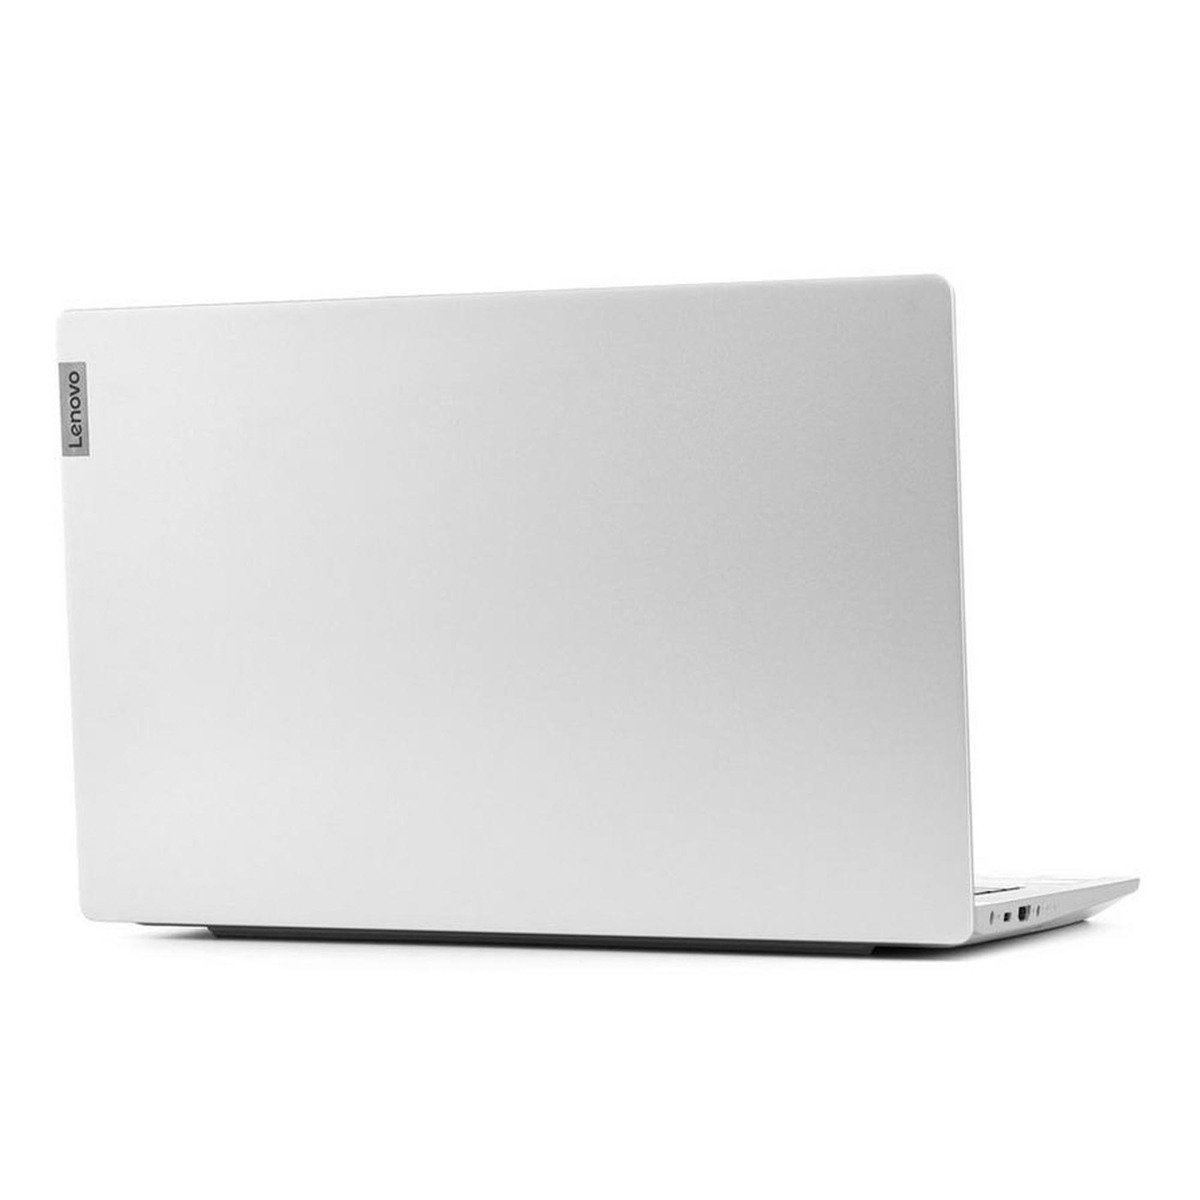 Lenovo IdeaPad 5 82FE00WWAD Core i7 Platinum Grey